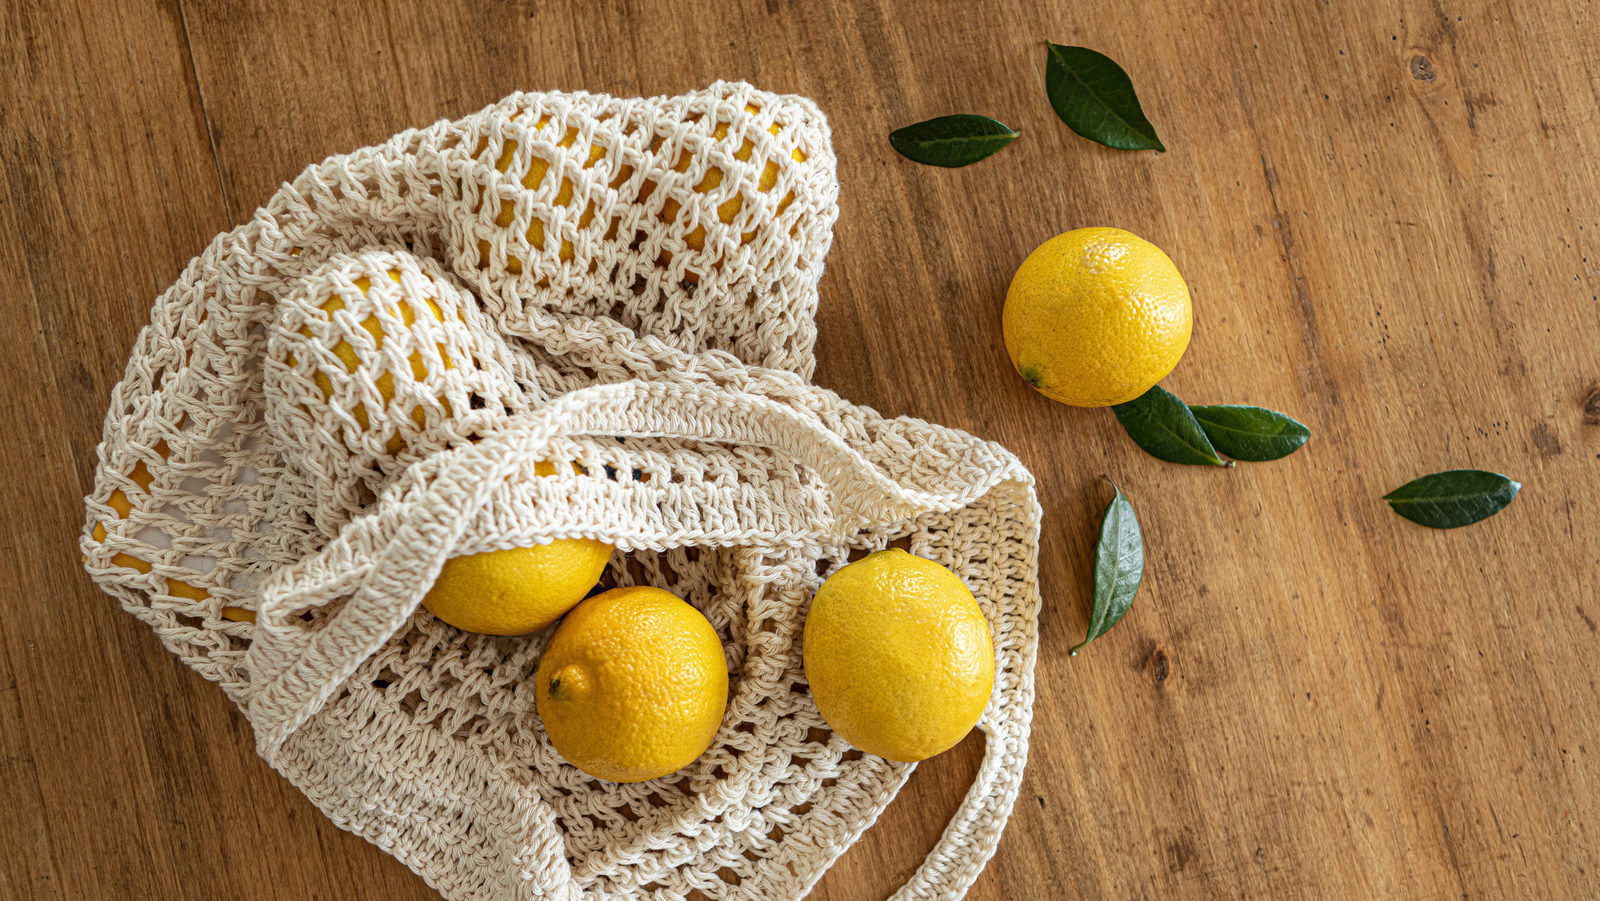 El truco del palillo para extraer el jugo de los limones sin ni siquiera cortarlos